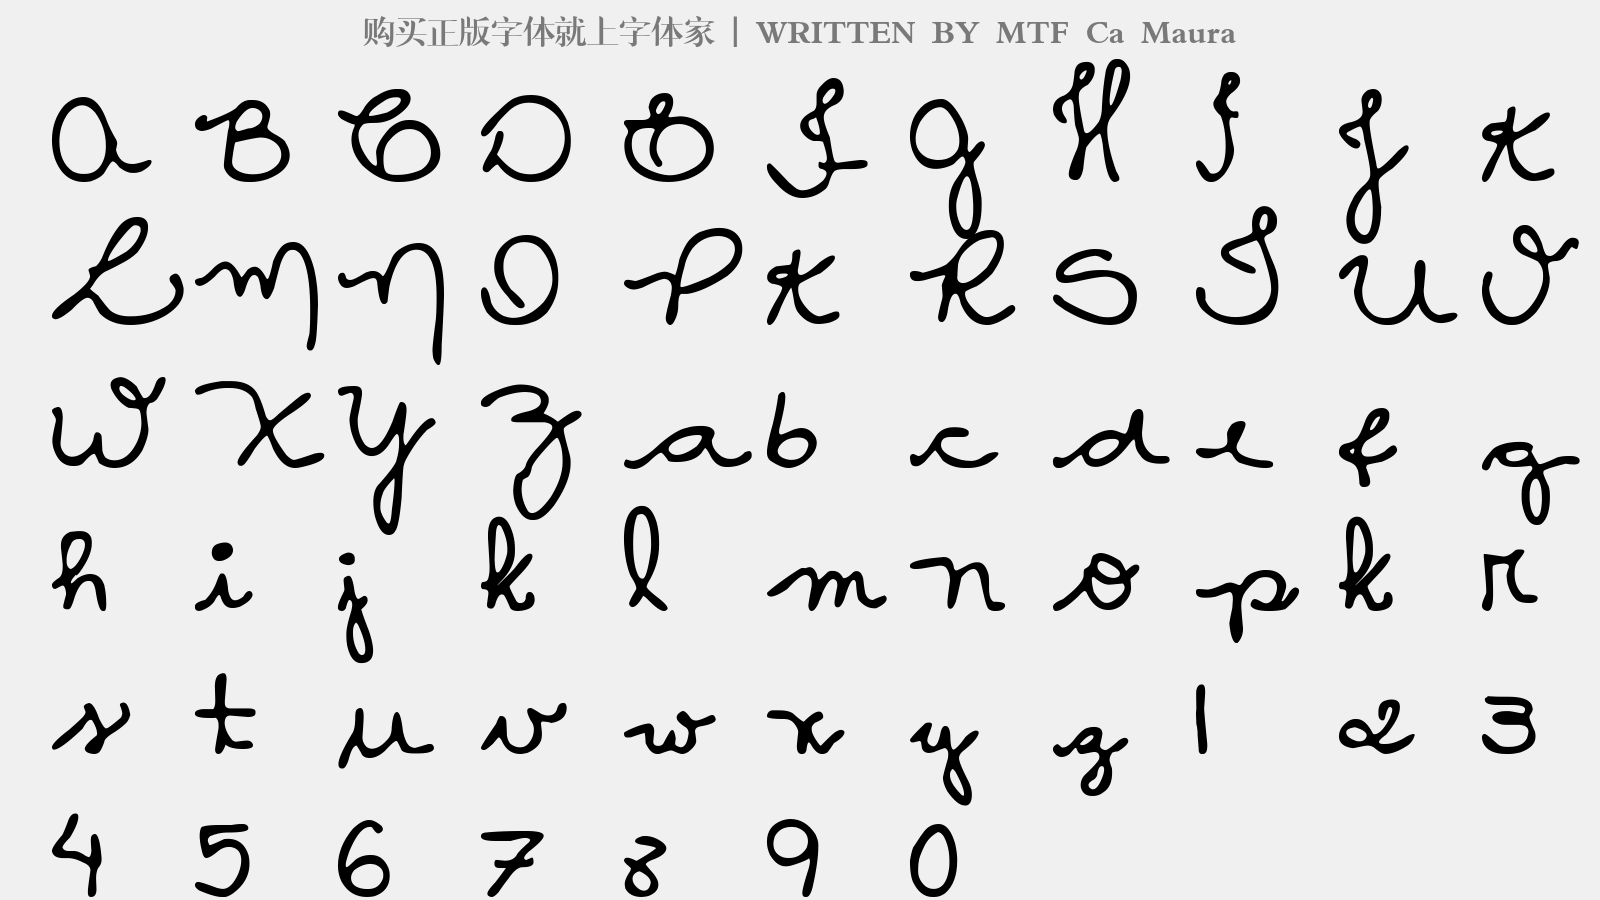 MTF Ca Maura - 大写字母/小写字母/数字